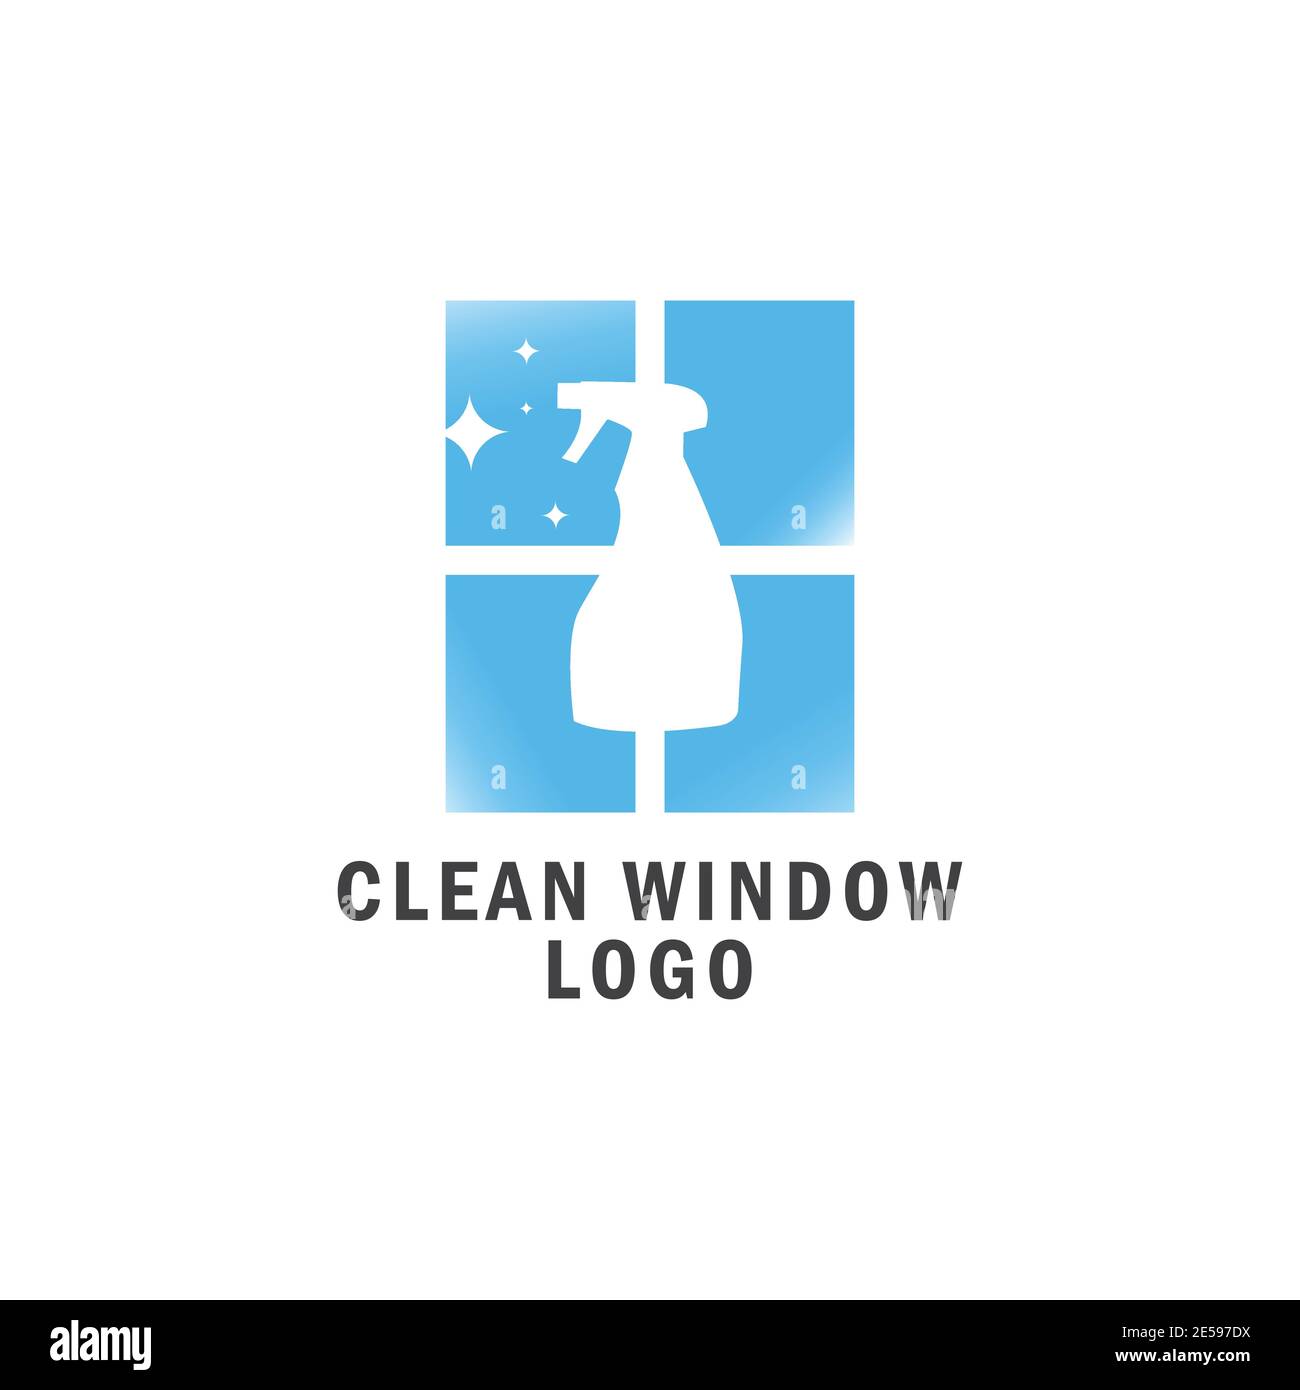 clean window logo design vector Stock Vector